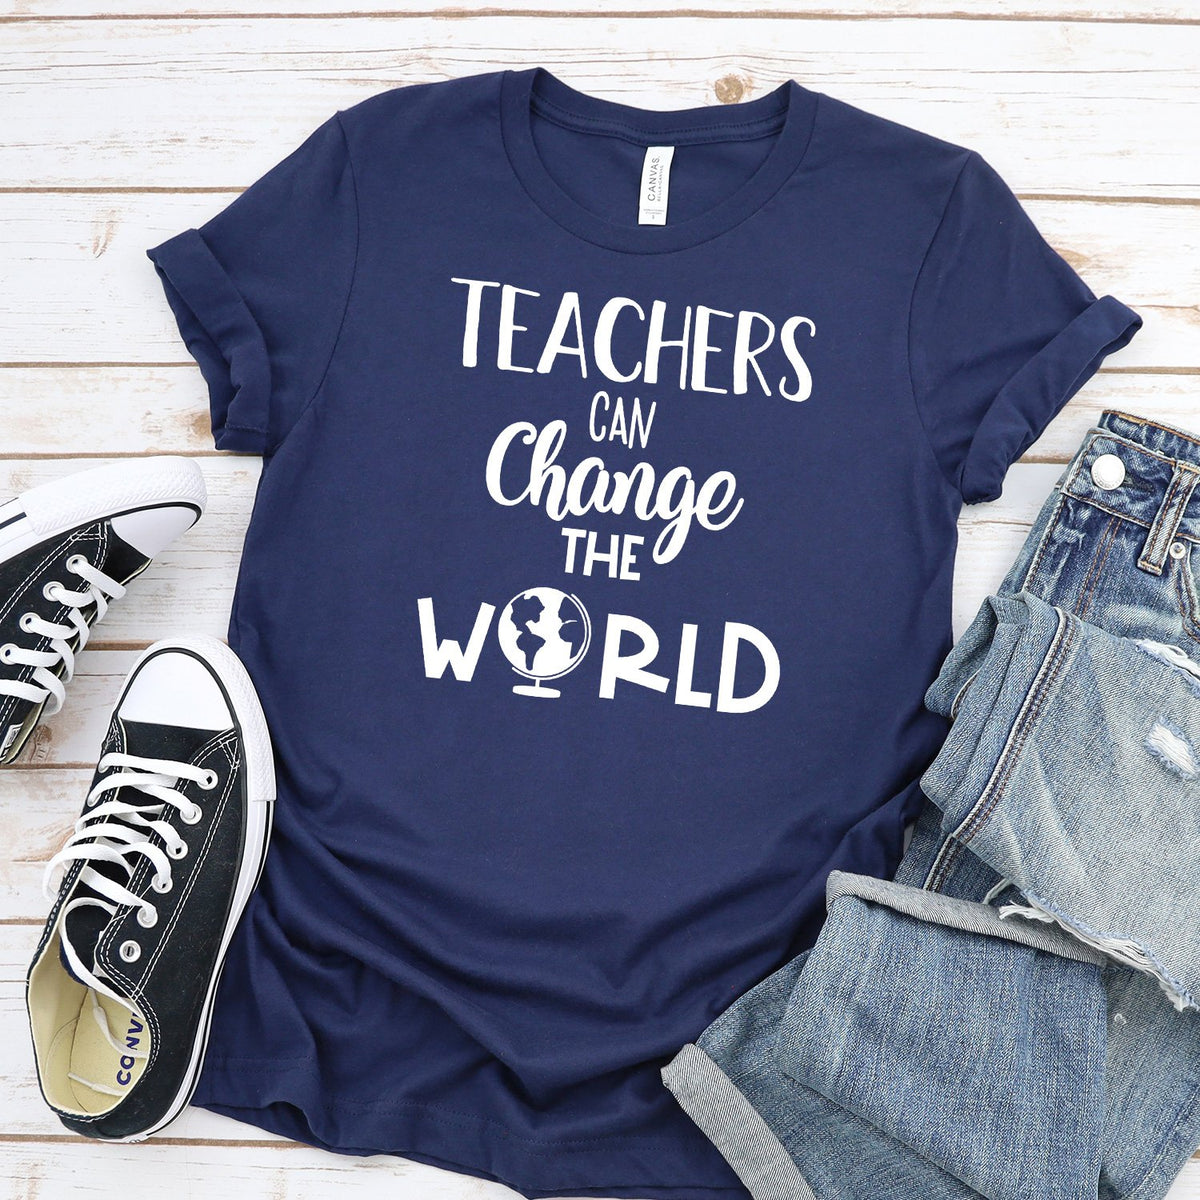 Teachers Can Change the World - Short Sleeve Tee Shirt